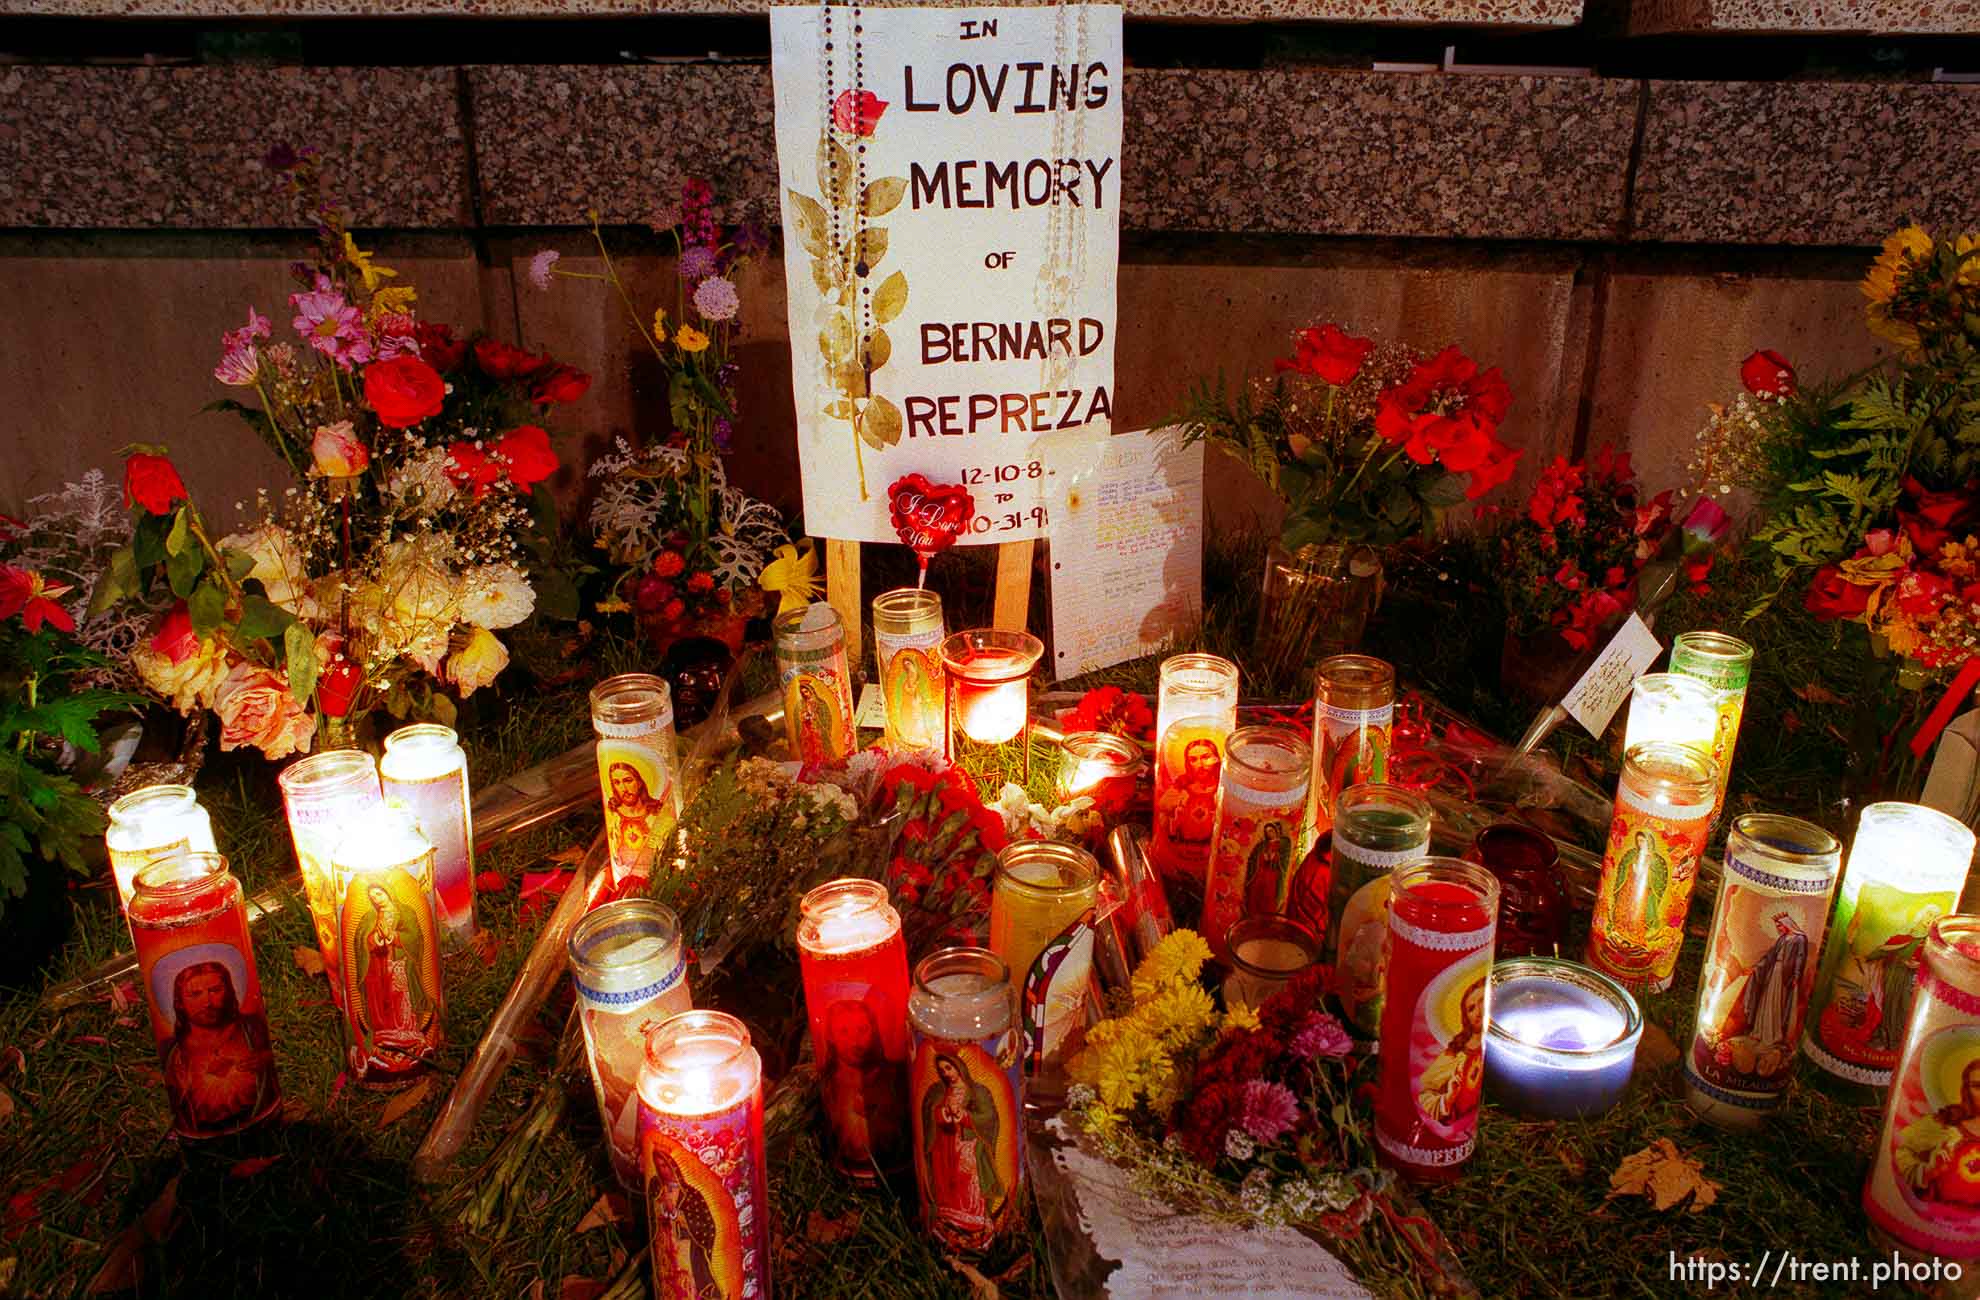 Memorial for Bernard Repreza